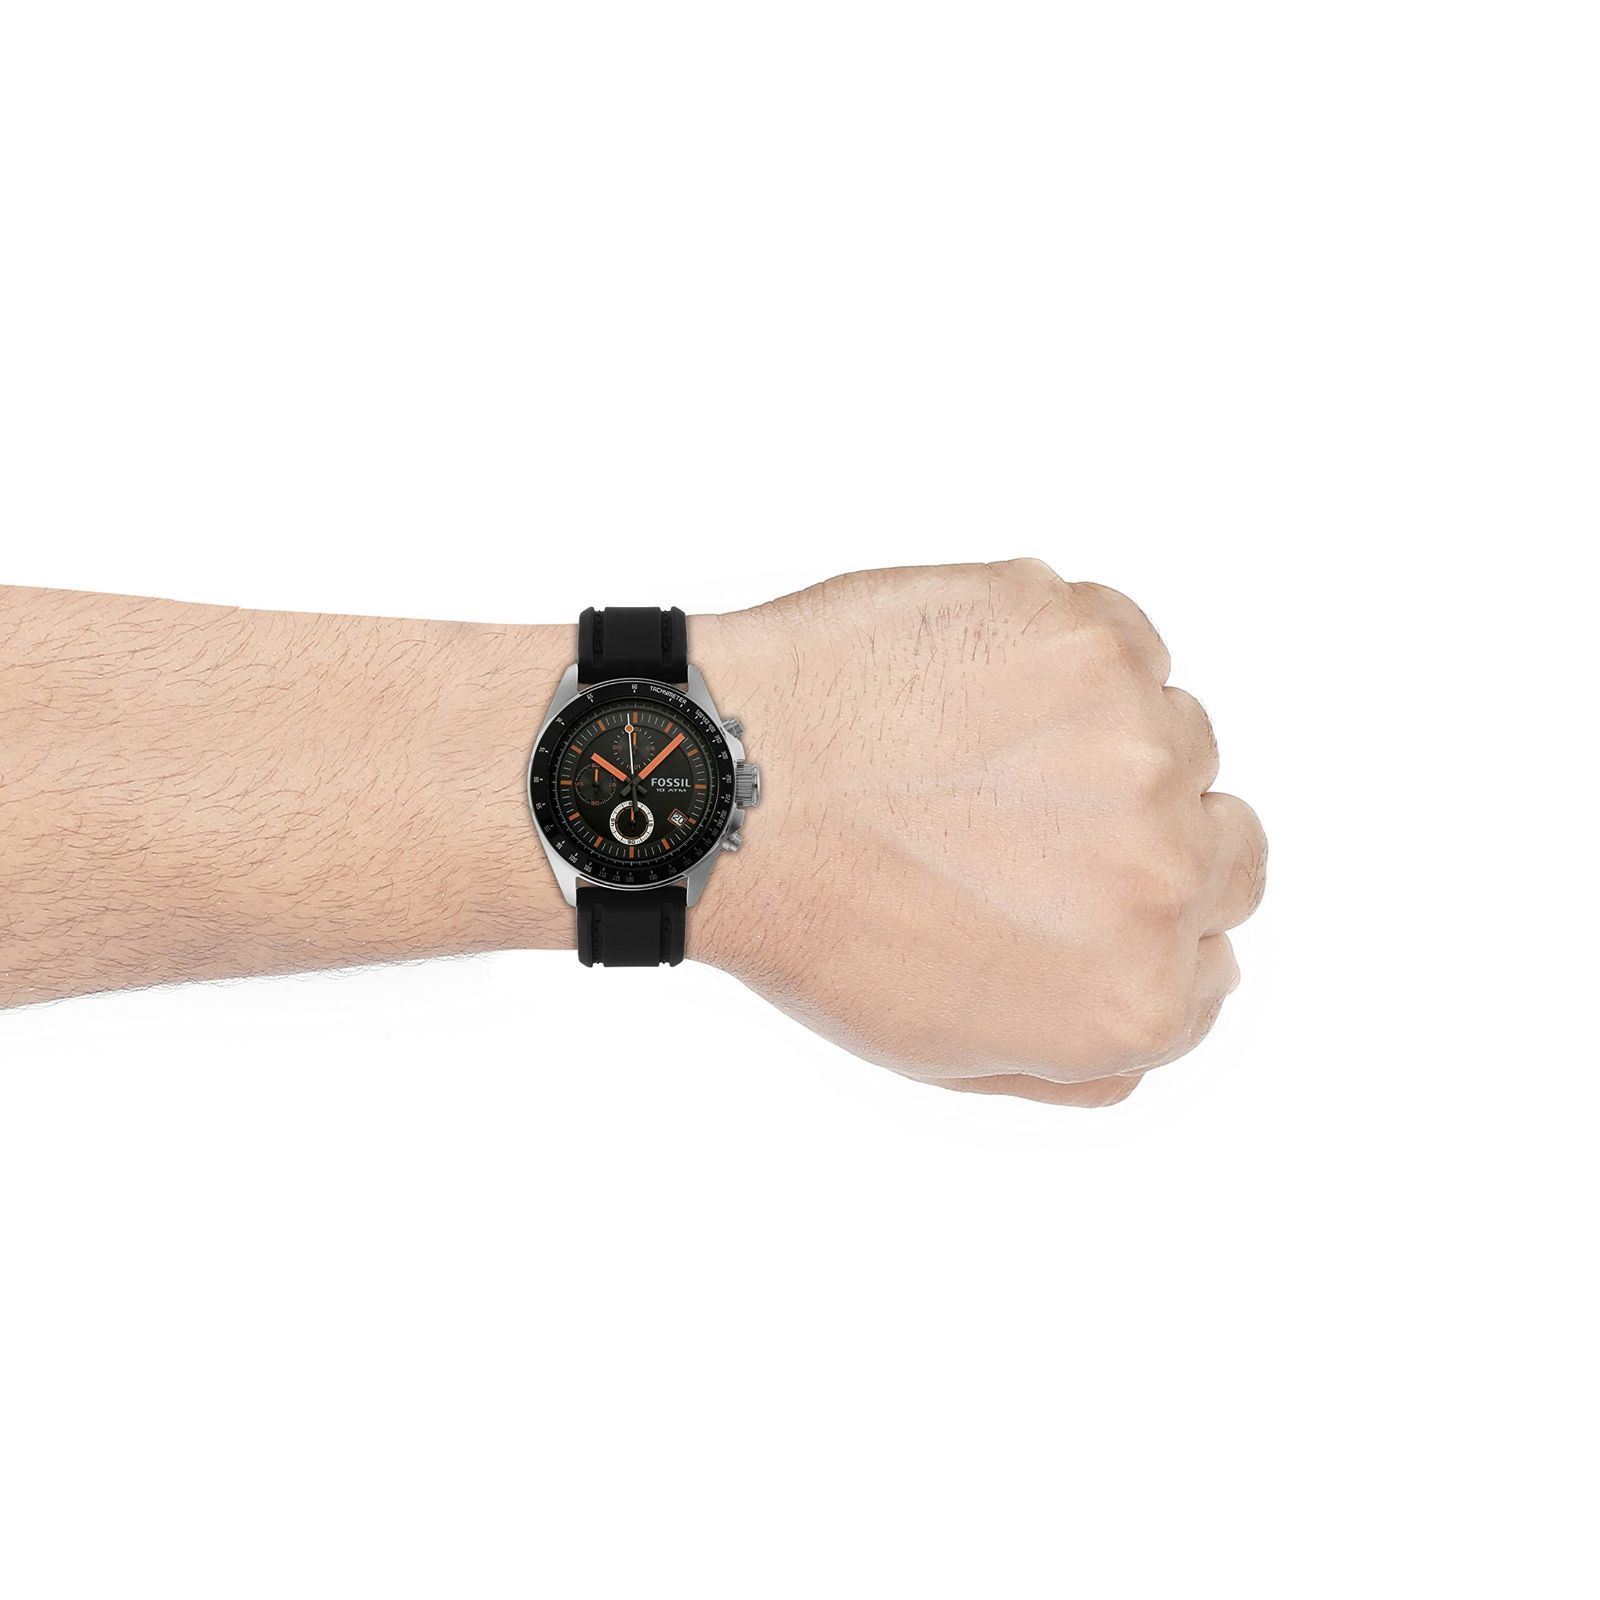 フォッシル] 腕時計 CH2647 メンズ 正規輸入品 - R.S ショップ - メルカリ